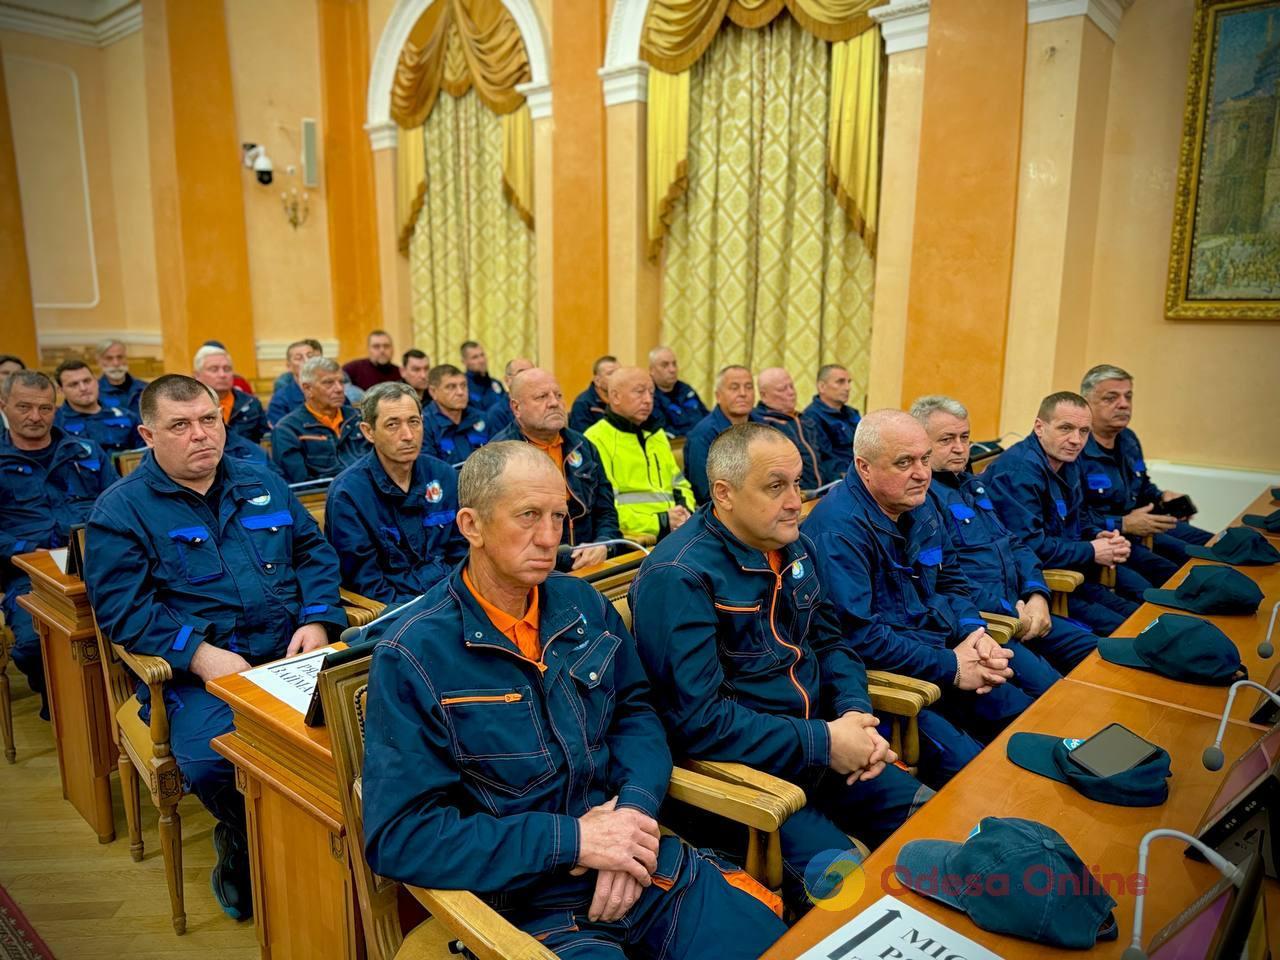 Одесские спасатели получили почетные награды